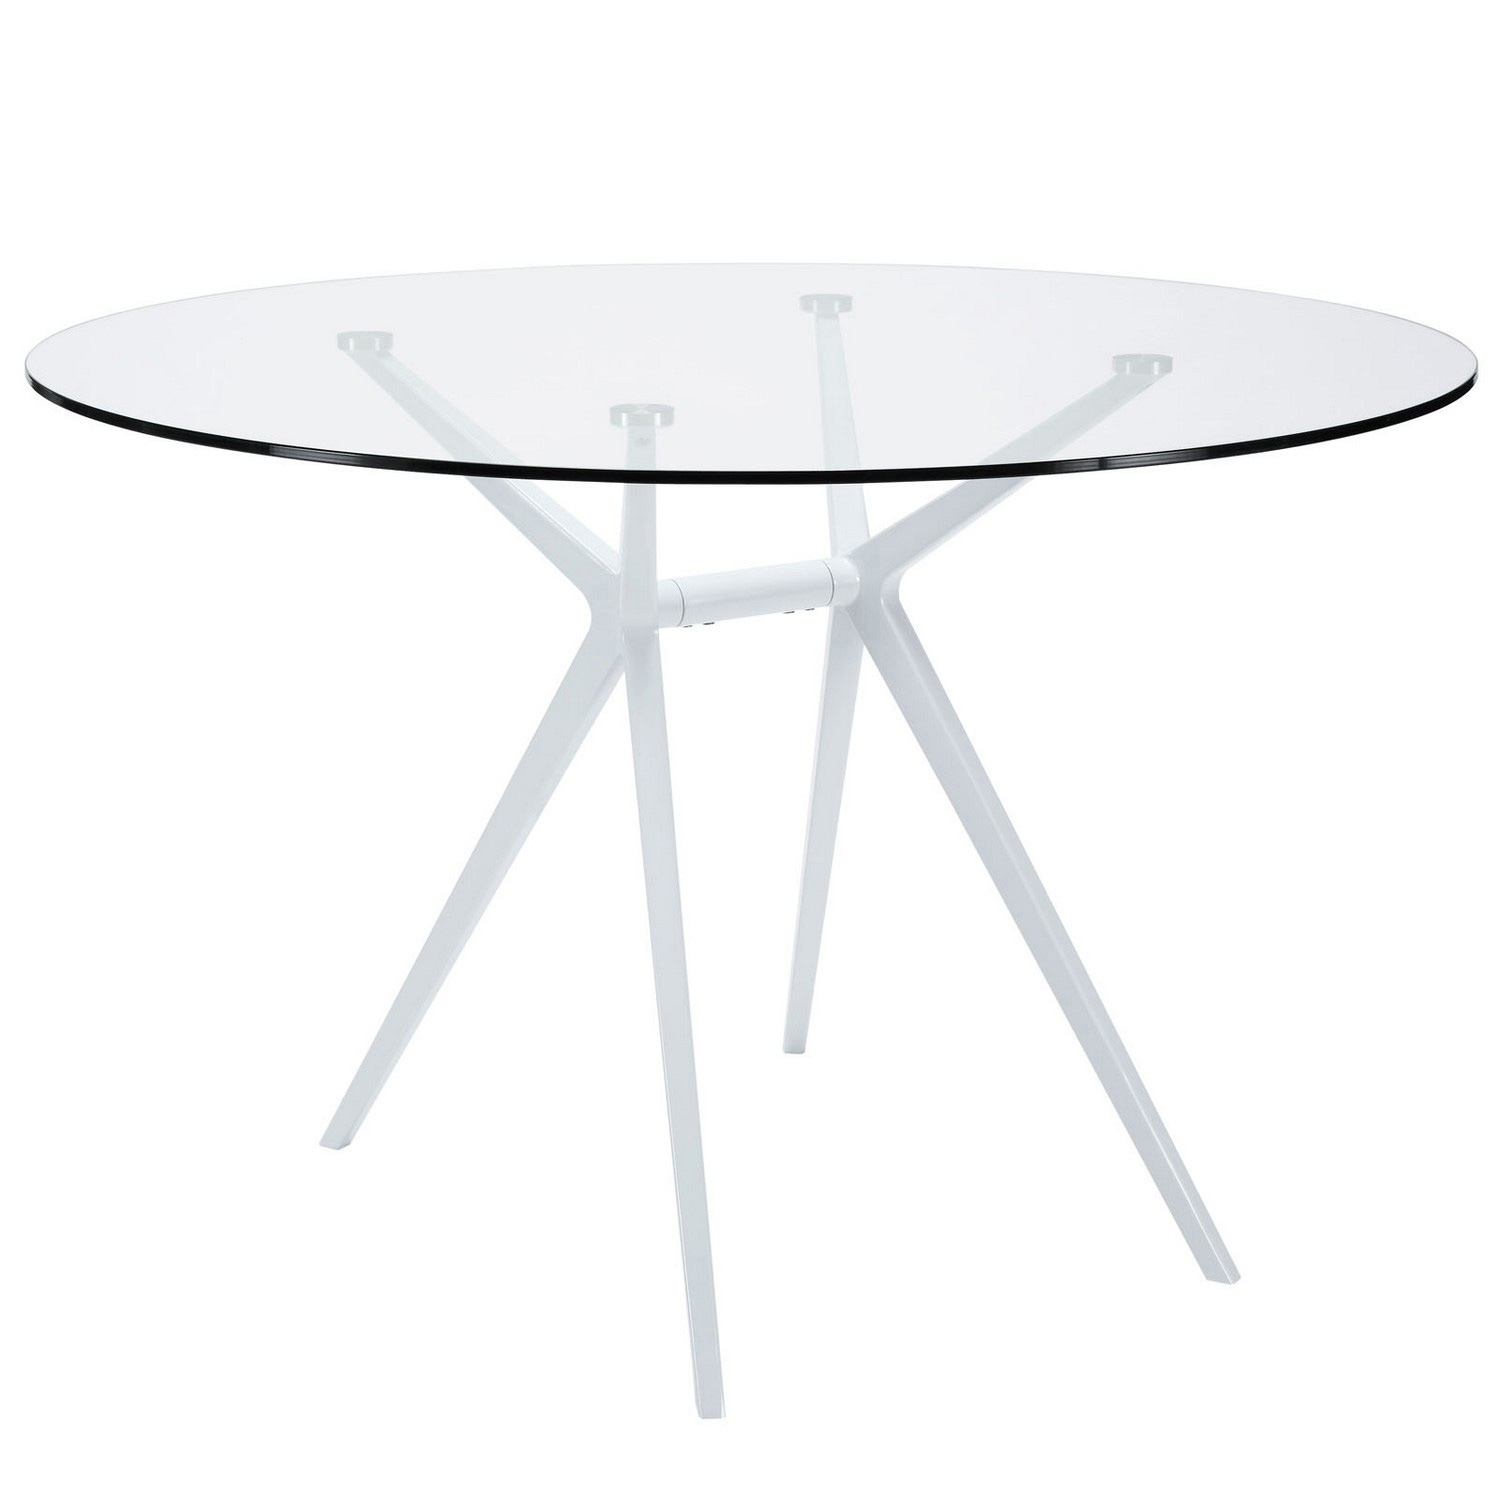 Modway Tilt Dining Table - White